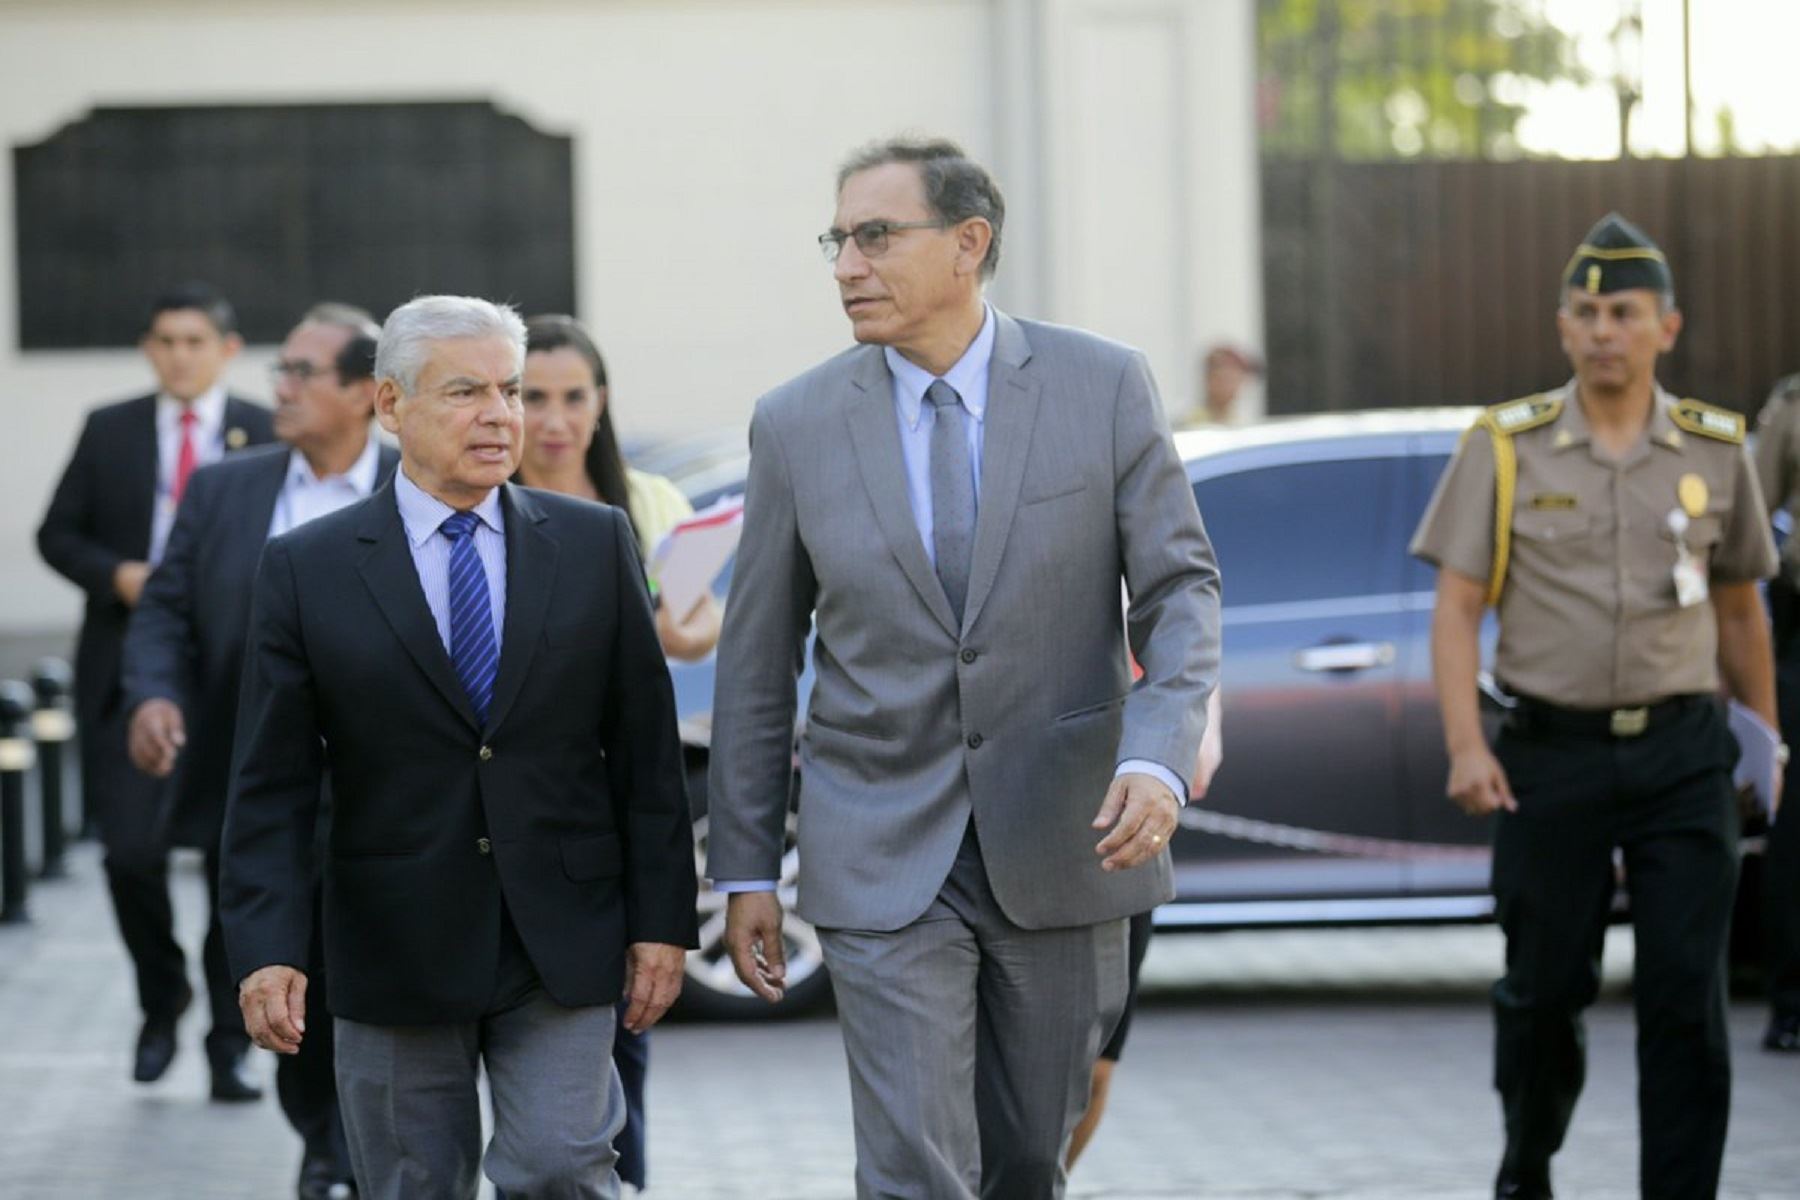 Presidente Martín Vizcarra y el jefe del Gabinete Ministerial, César Villanueva, saludan a la población mientras se dirigen al Ministerio de Economía para reunirse con gobernadores regionales. Foto: PCM.